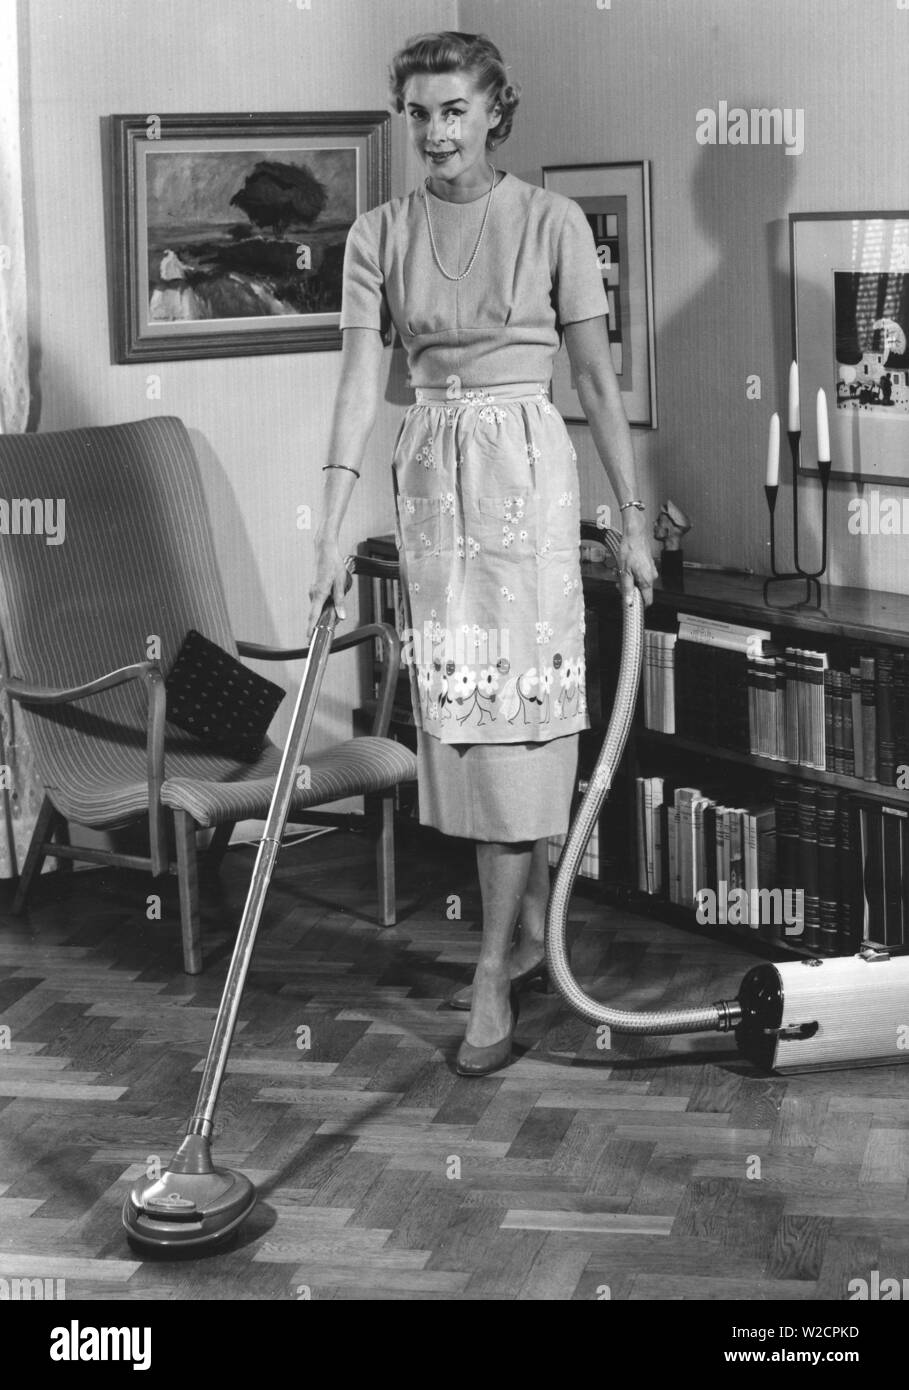 Journée de nettoyage dans les années 1950. Une jeune femme au foyer est l'aspiration du sol à l'aide du dernier modèle d'Electrolux. Le modèle peut aussi être utilisé pour polir les planchers et elle utilise l'appareil. Suède 1950 Banque D'Images